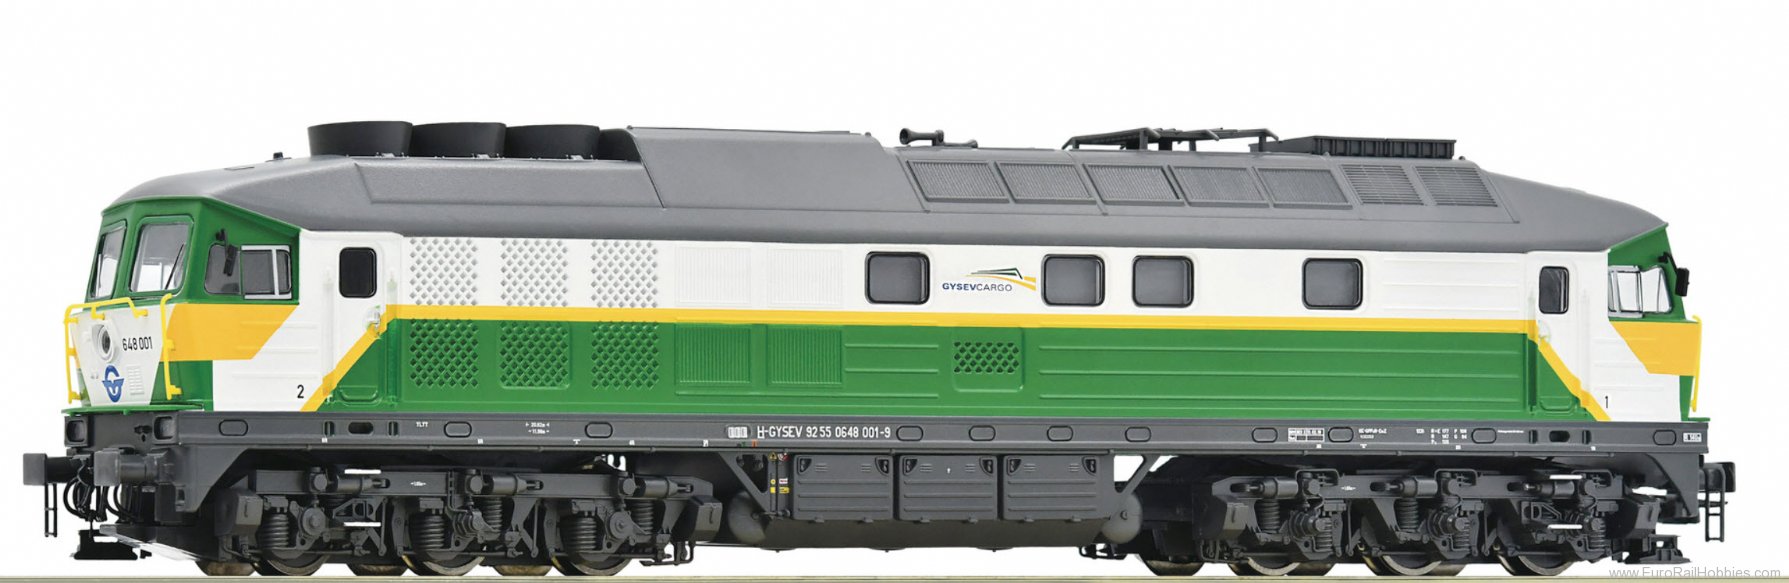 Roco 52464 Gysev Diesel locomotive class 648 (Factory So